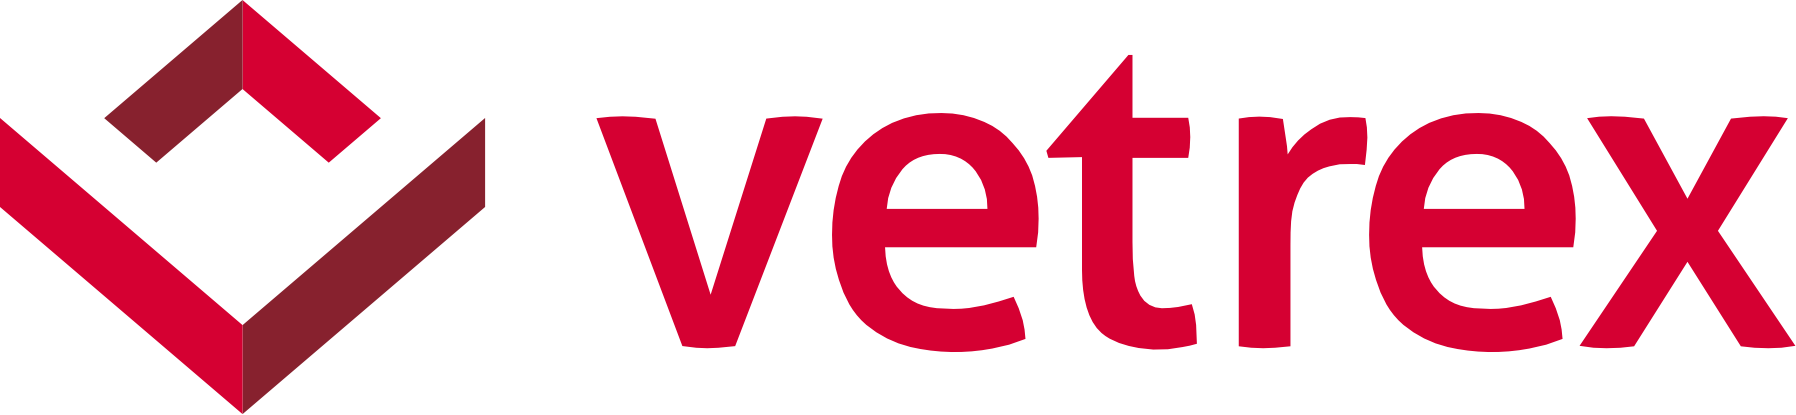 Portal Vetrex